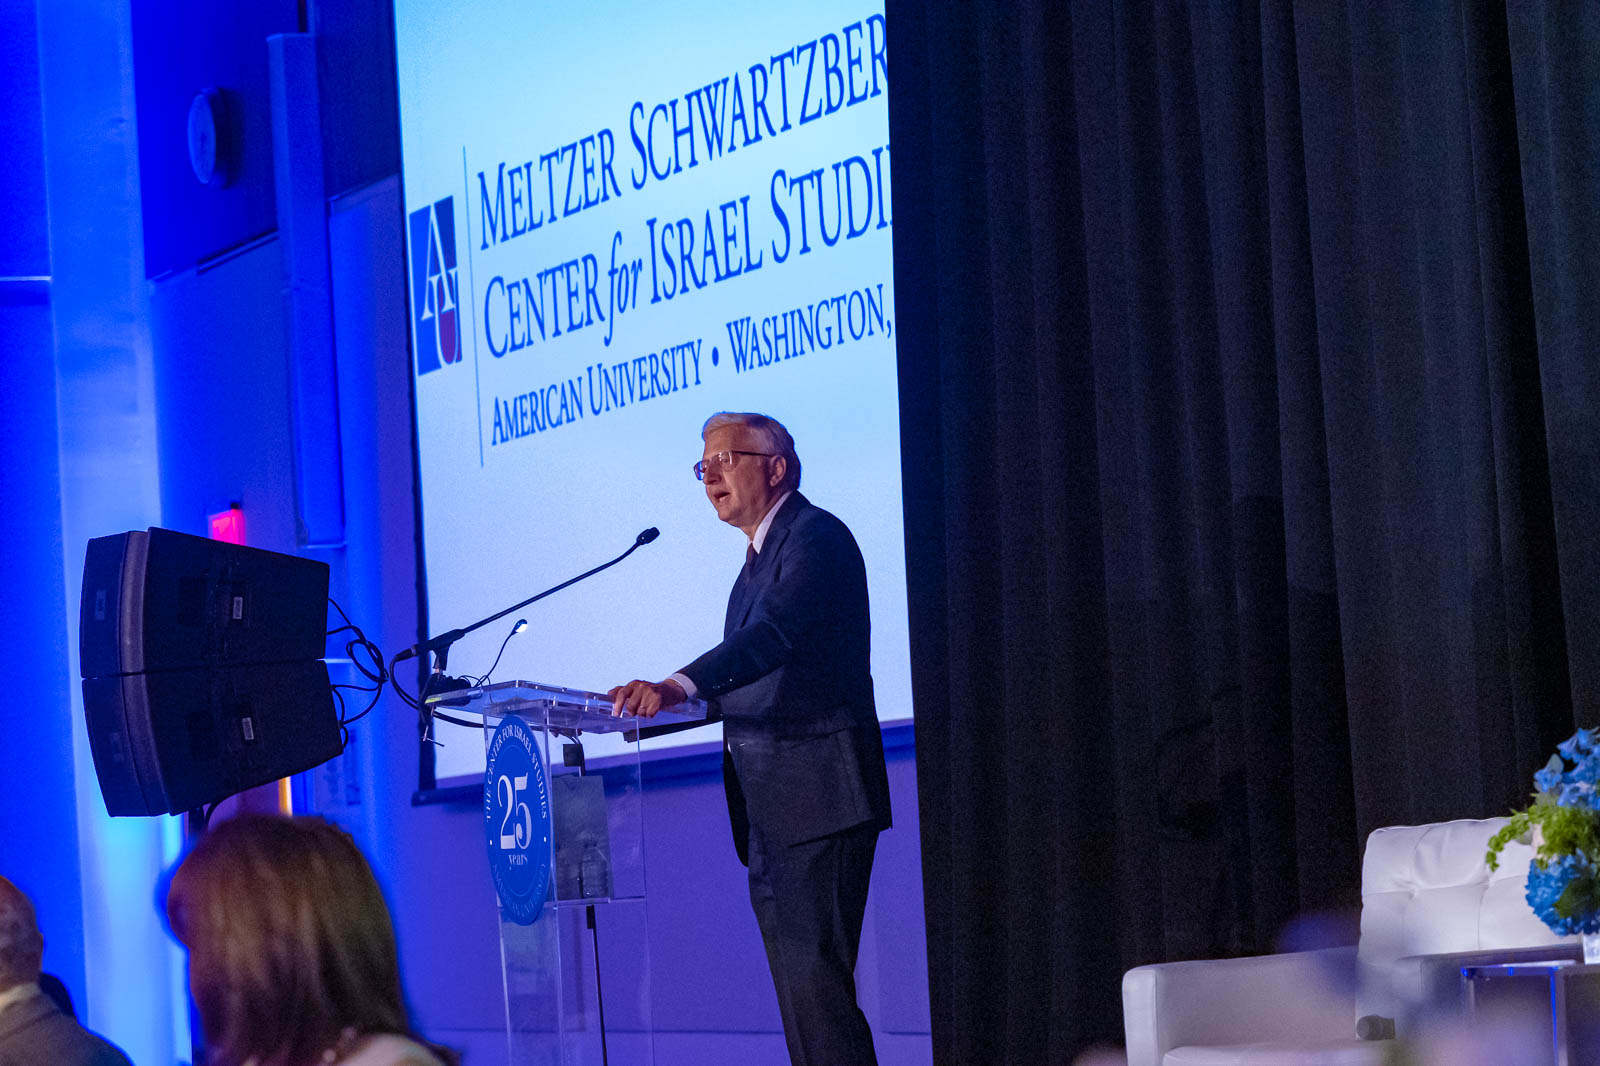 Professor Michael Brenner speaking at the Meltzer Schwartzberg Center for Israel Studies naming.